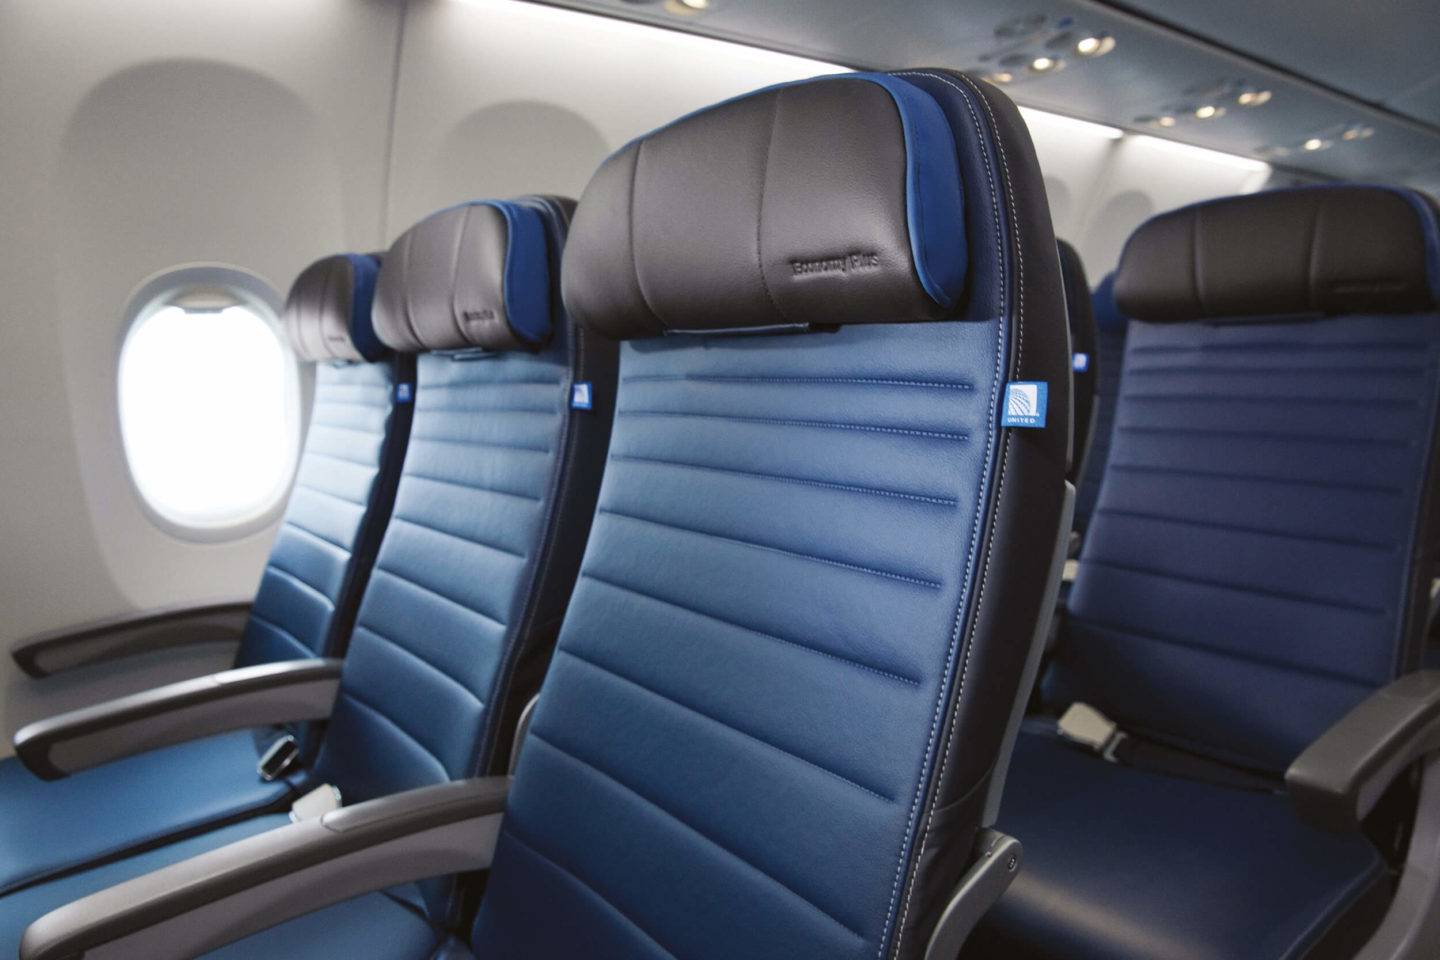 United Airlines Premium Economy Plus seat